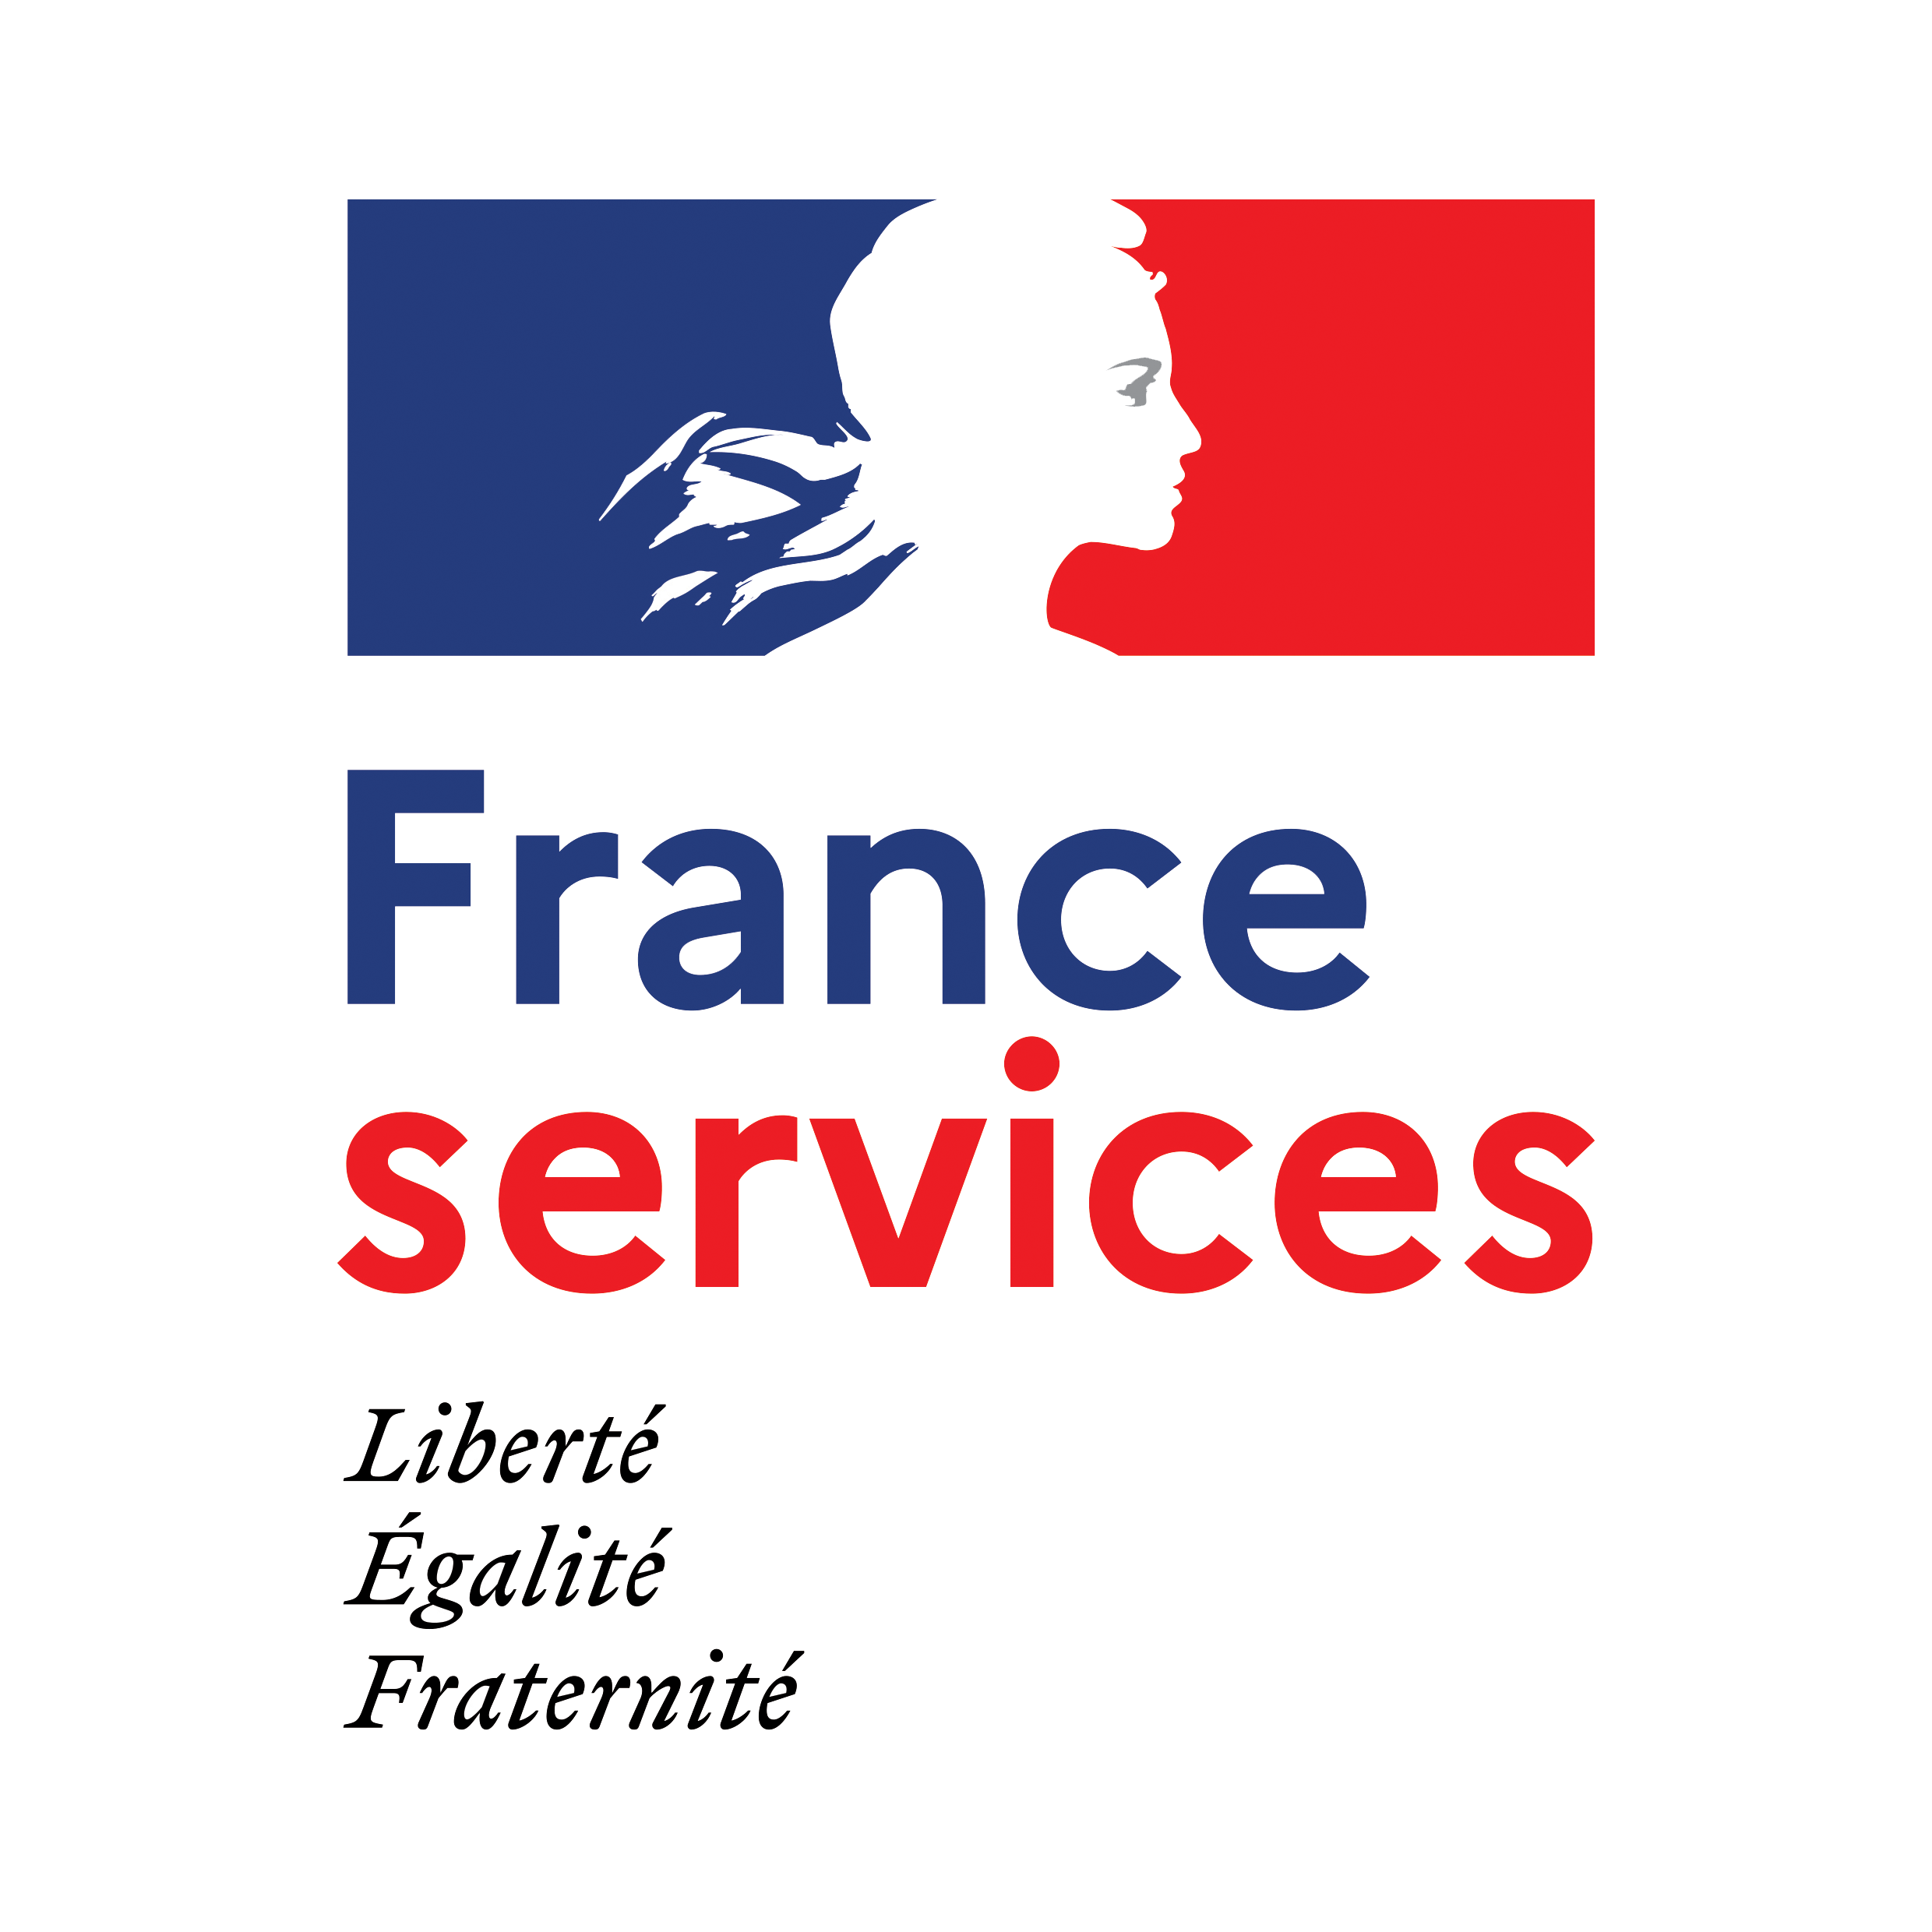 France Service uniquement sur RDV